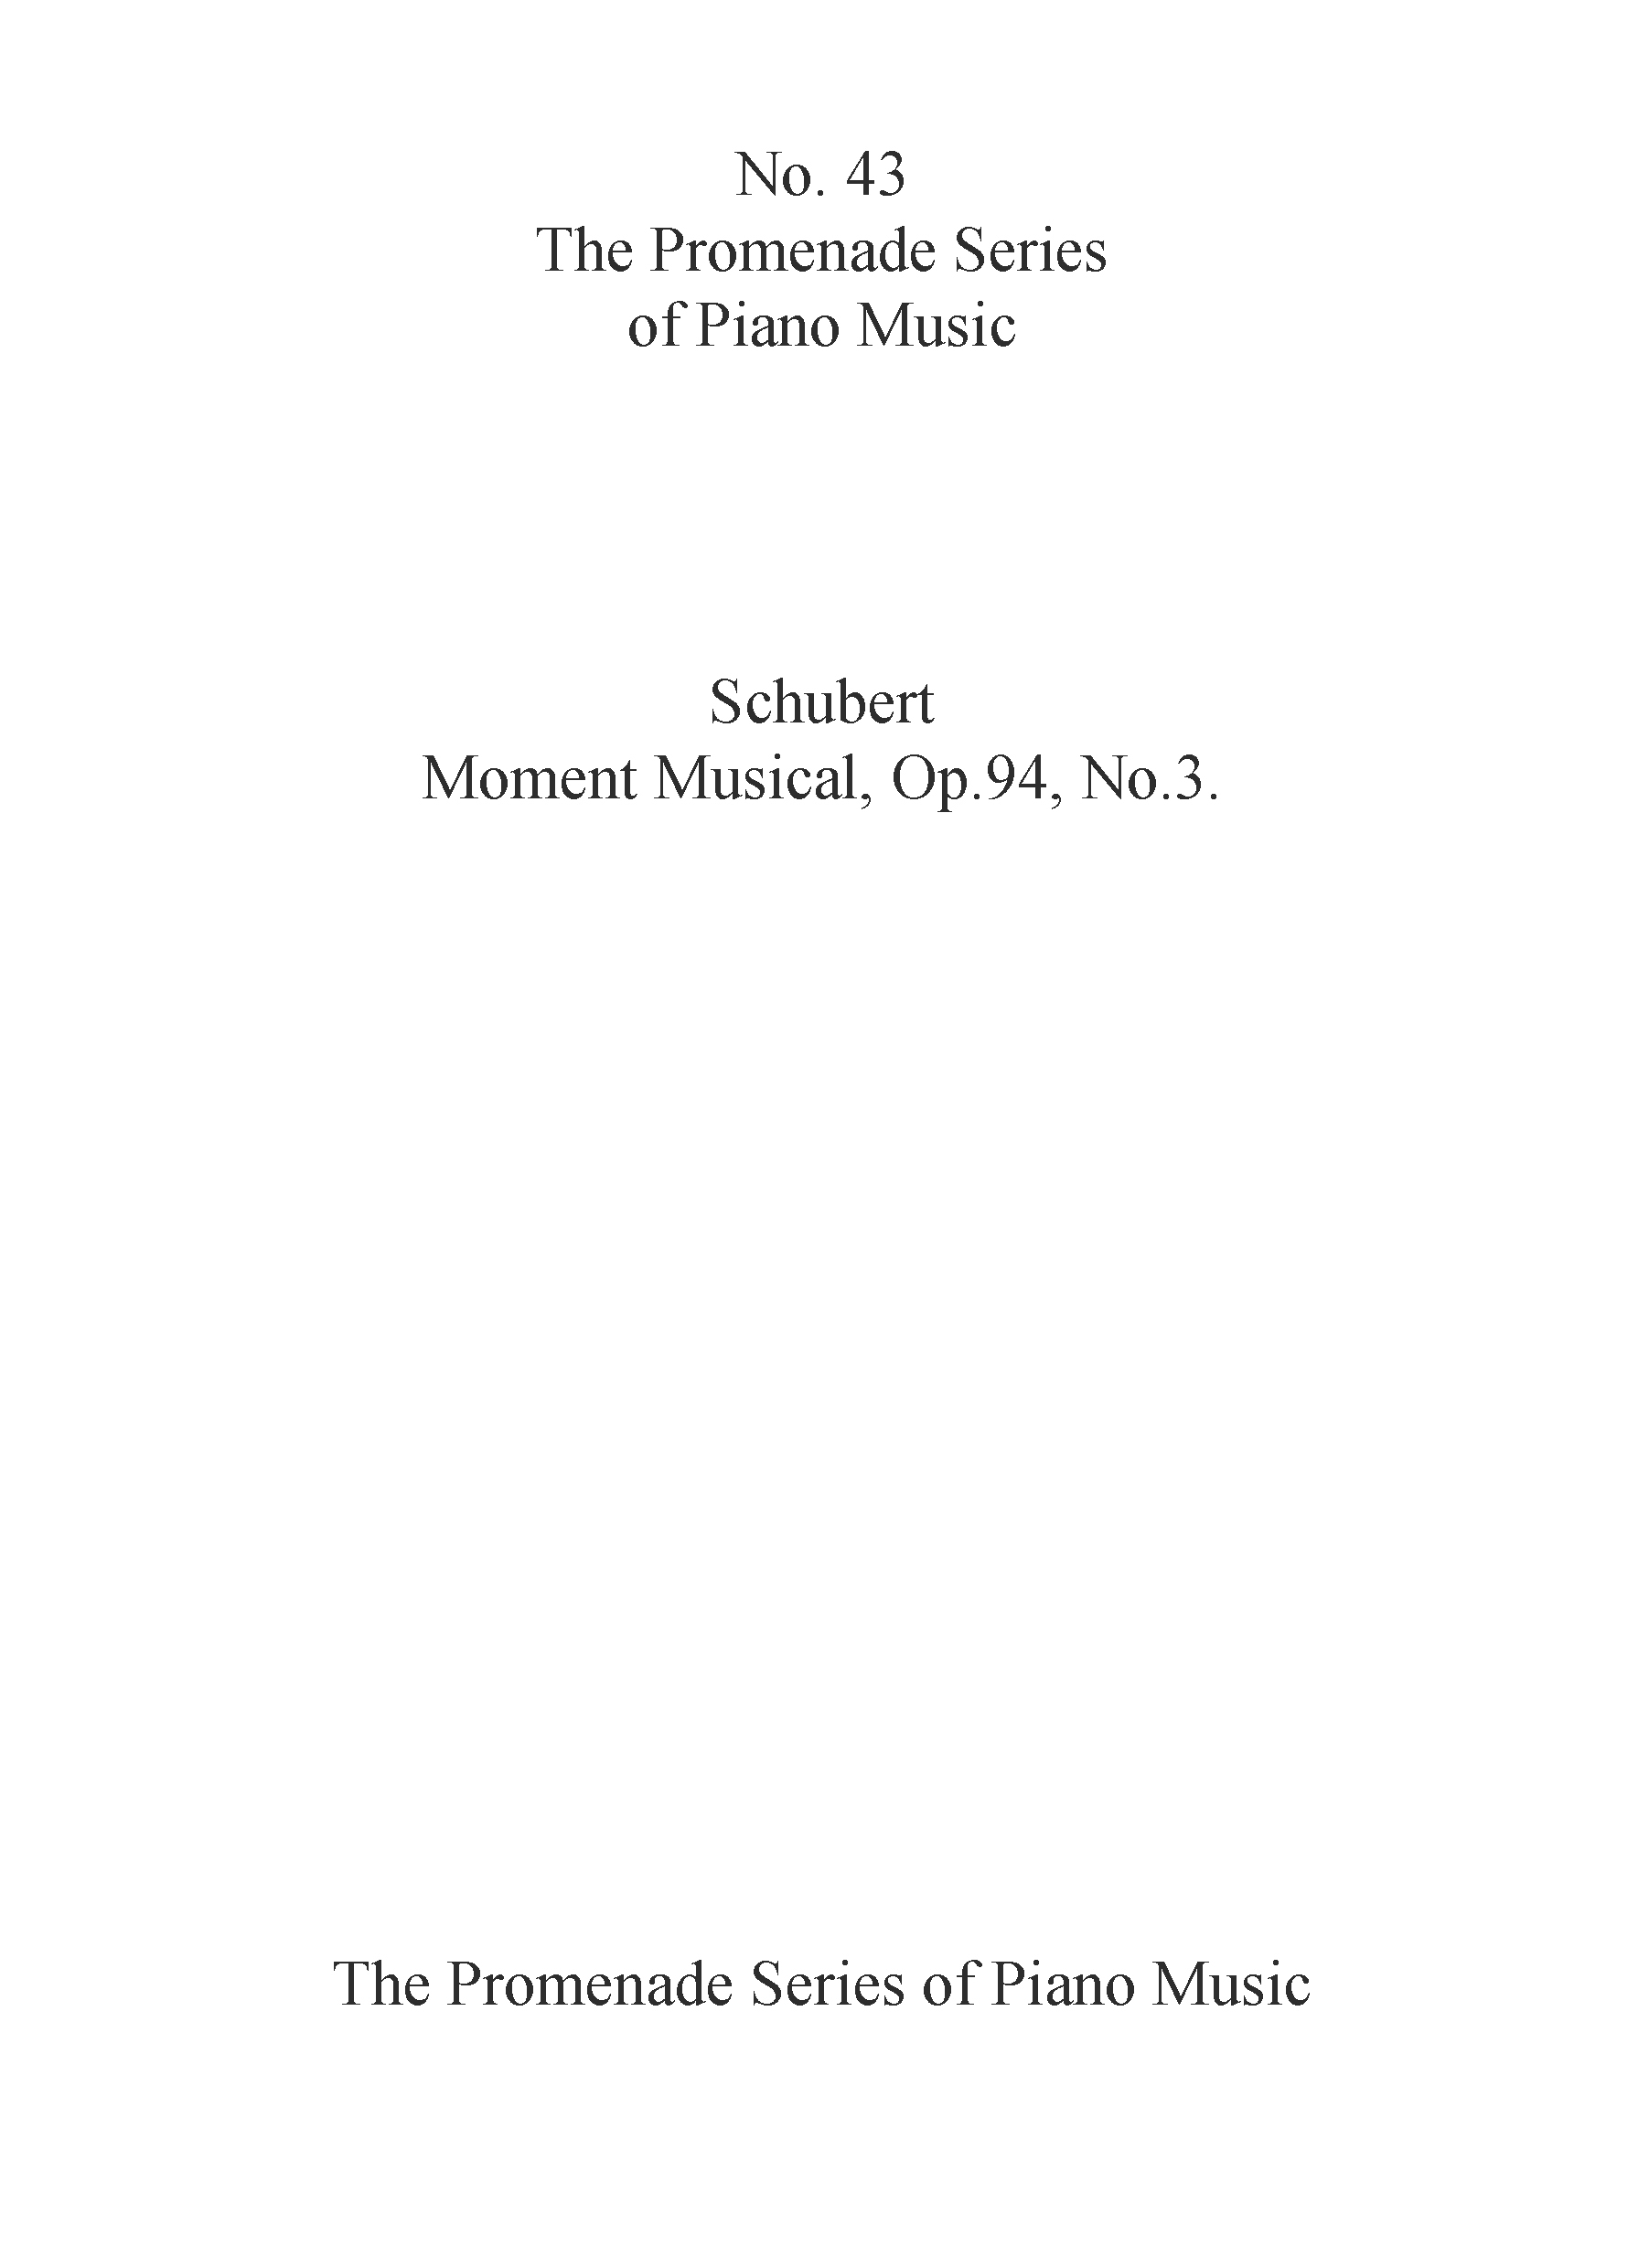 Franz Schubert: Moment Musical  Op. 94  No. 3: Piano: Instrumental Work